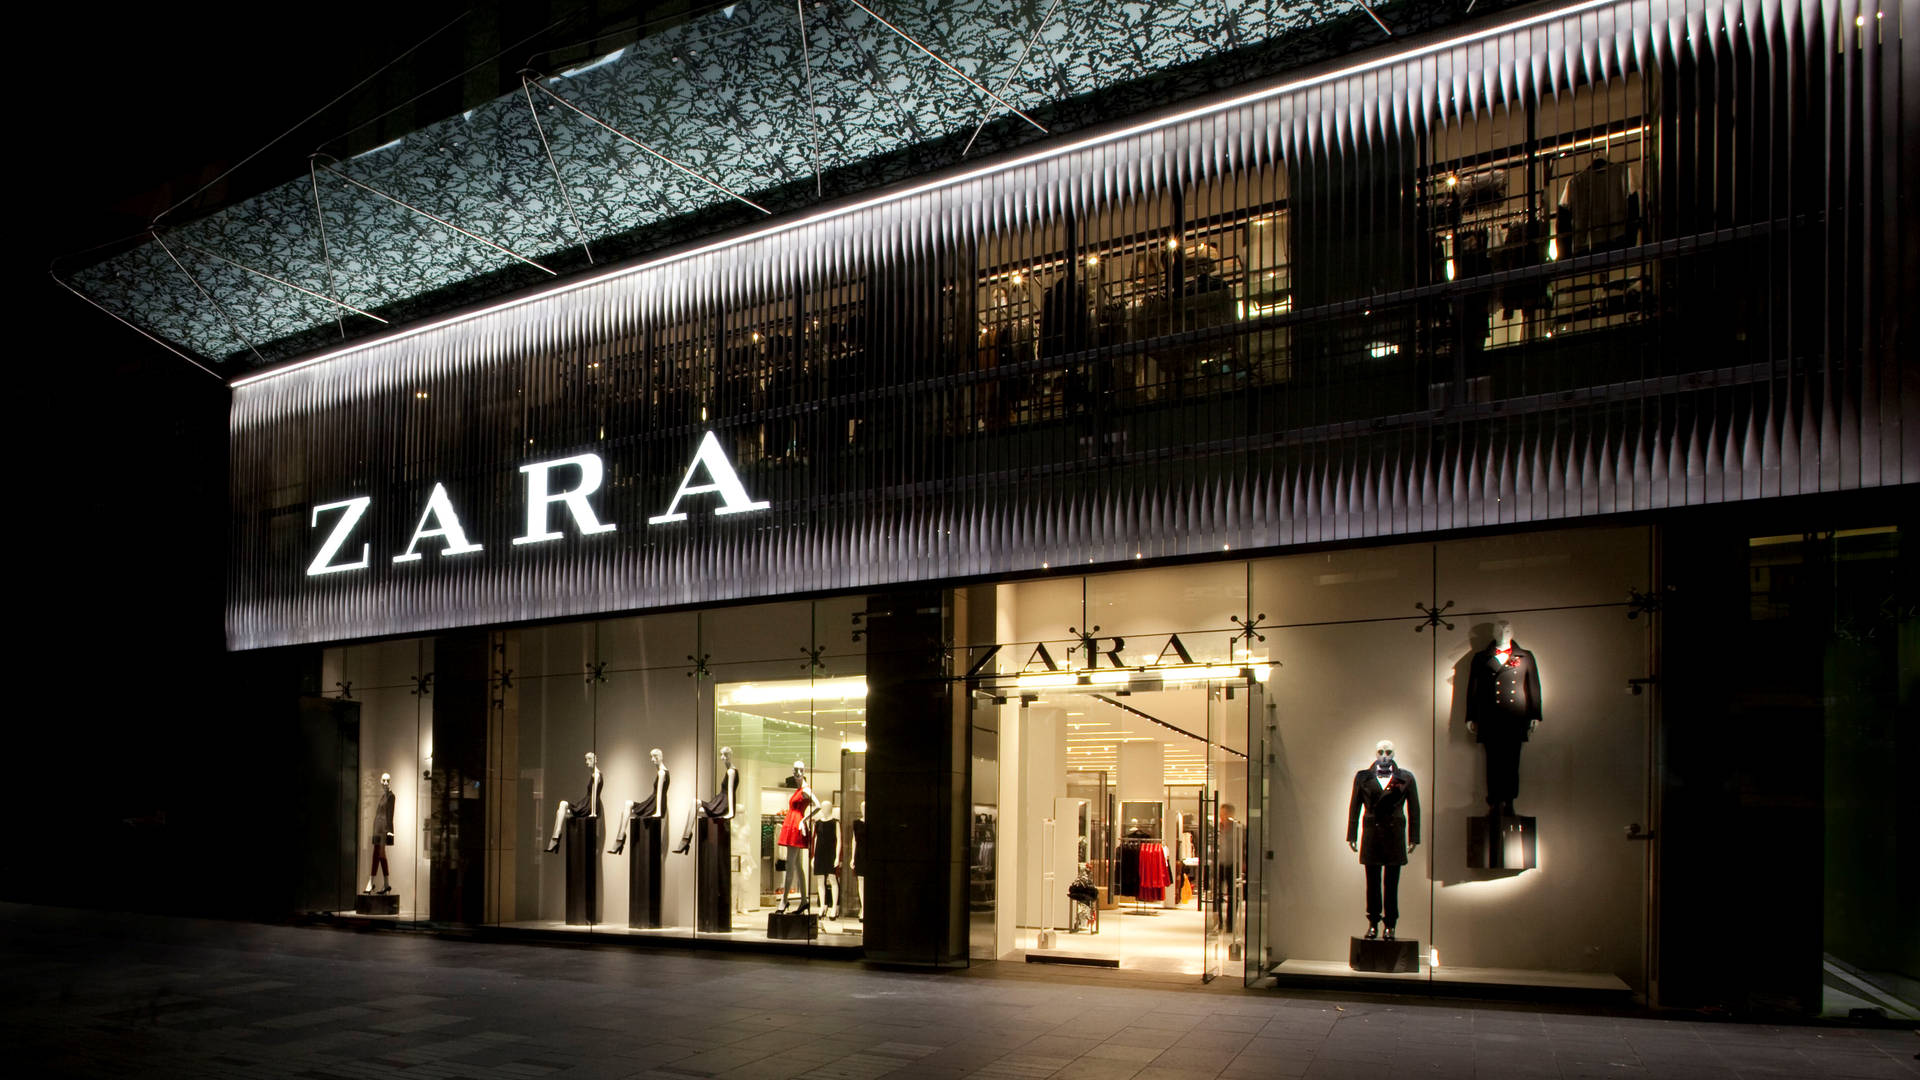 Elegant Zara Store At Night Background